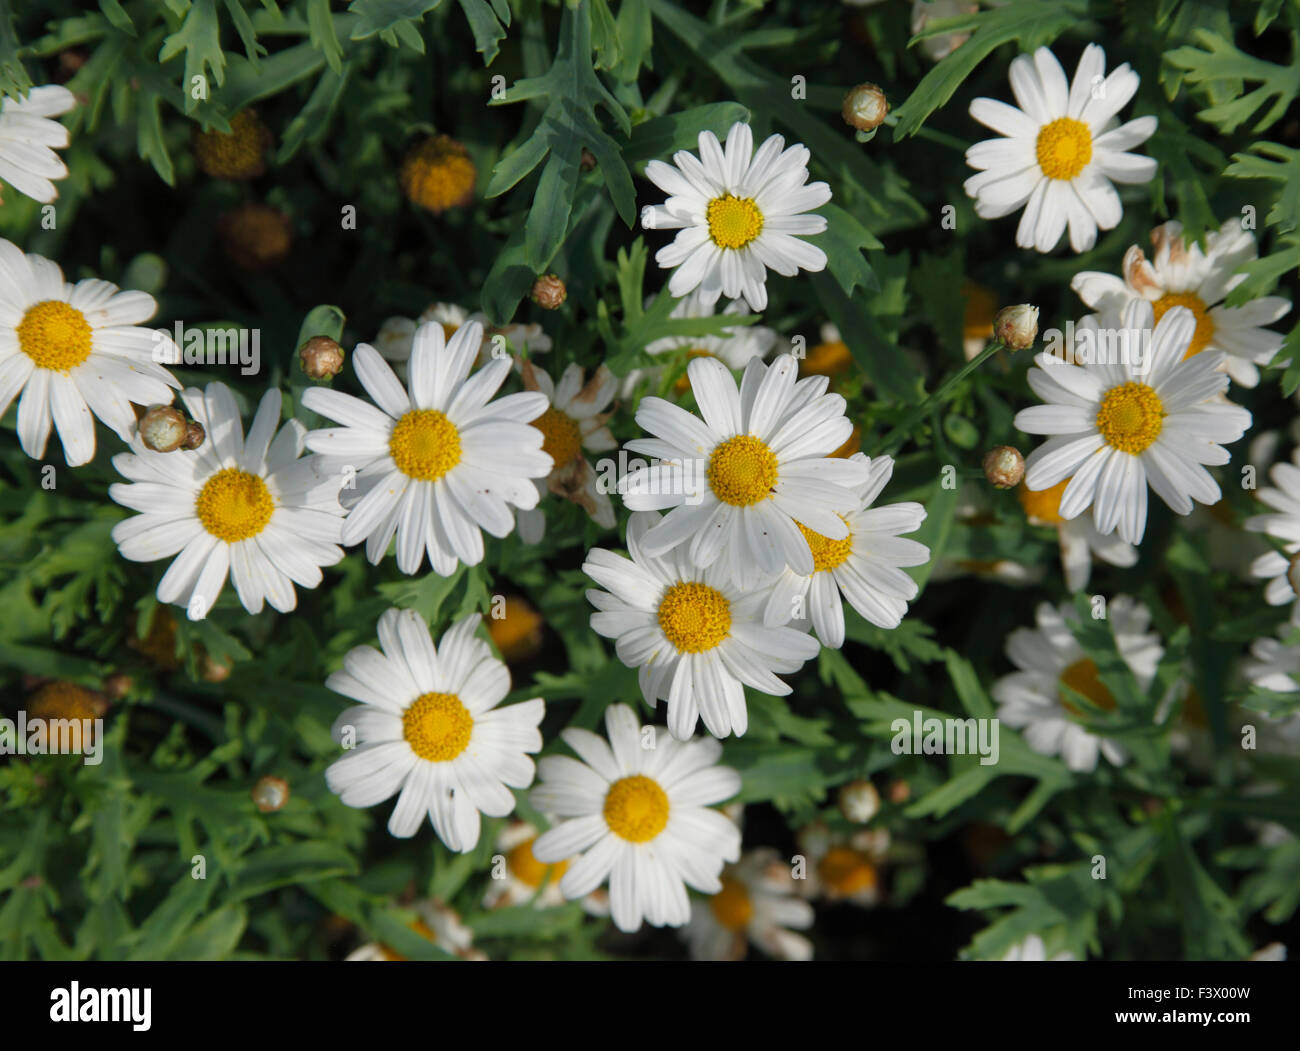 Agryanthemum 'Millenium Star' plant in flower Stock Photo